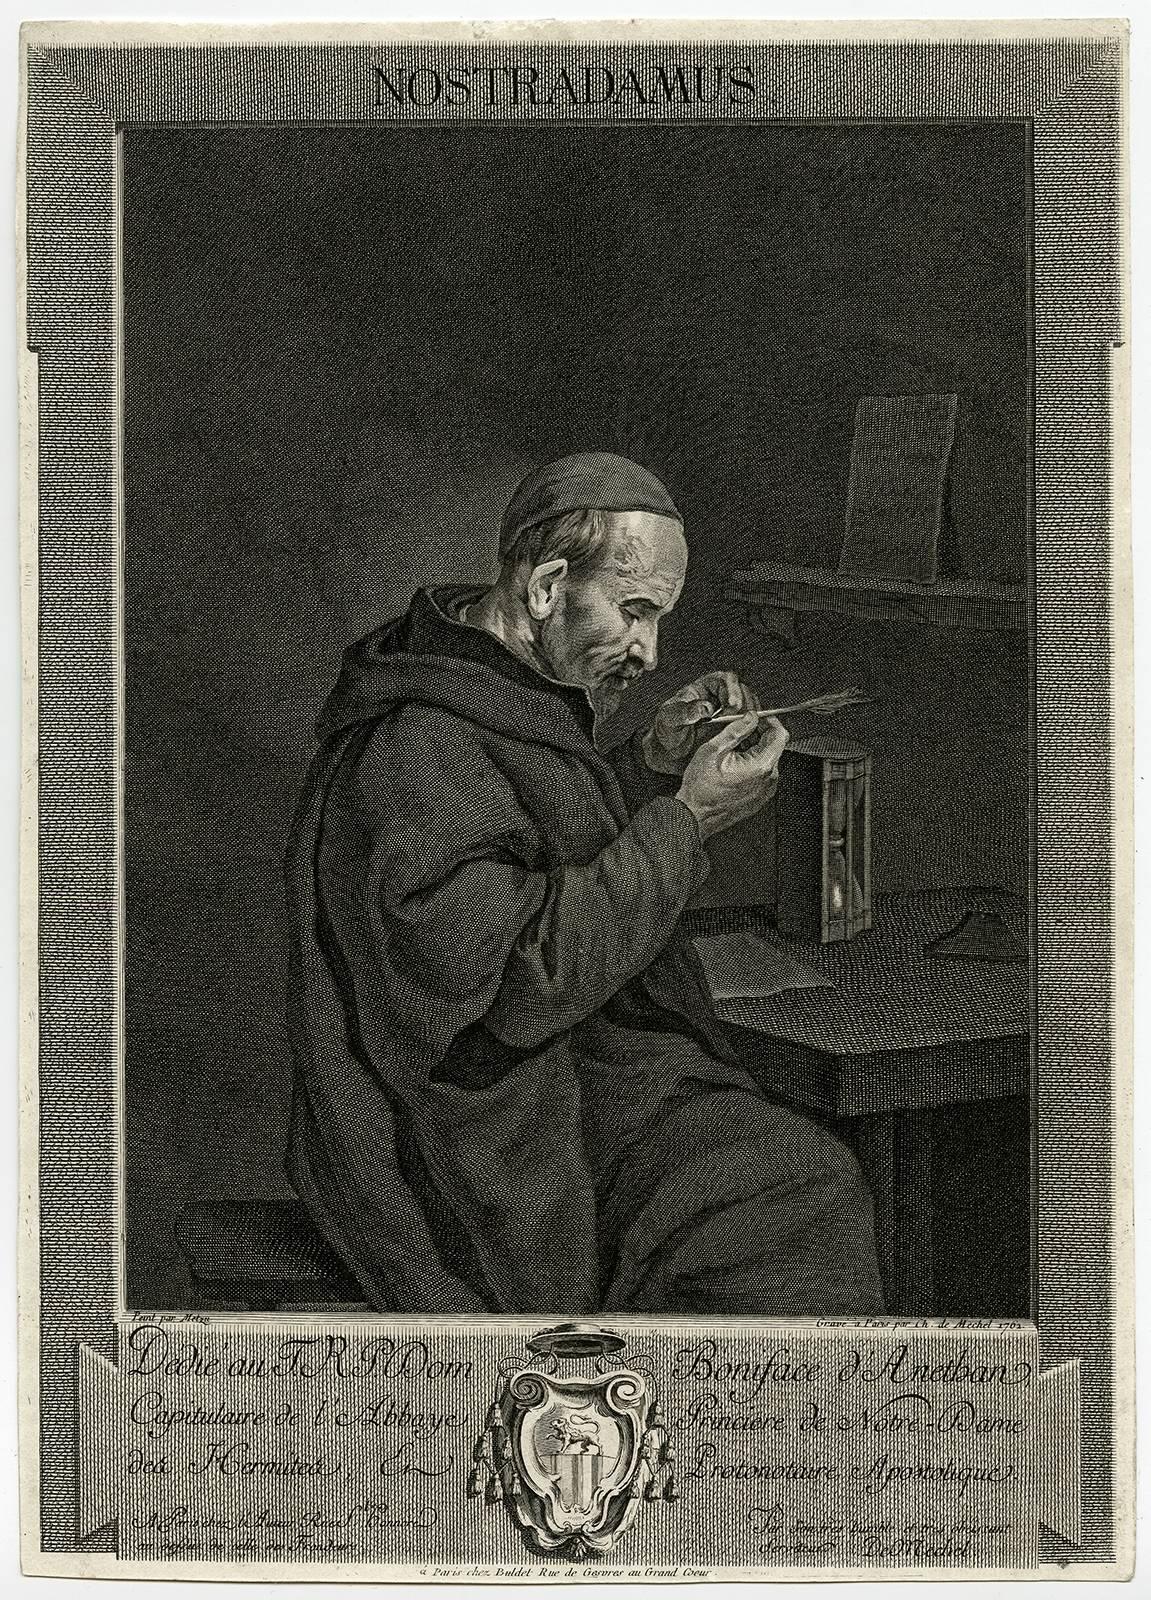 Christian von Mechel Portrait Print - Nostradamus.